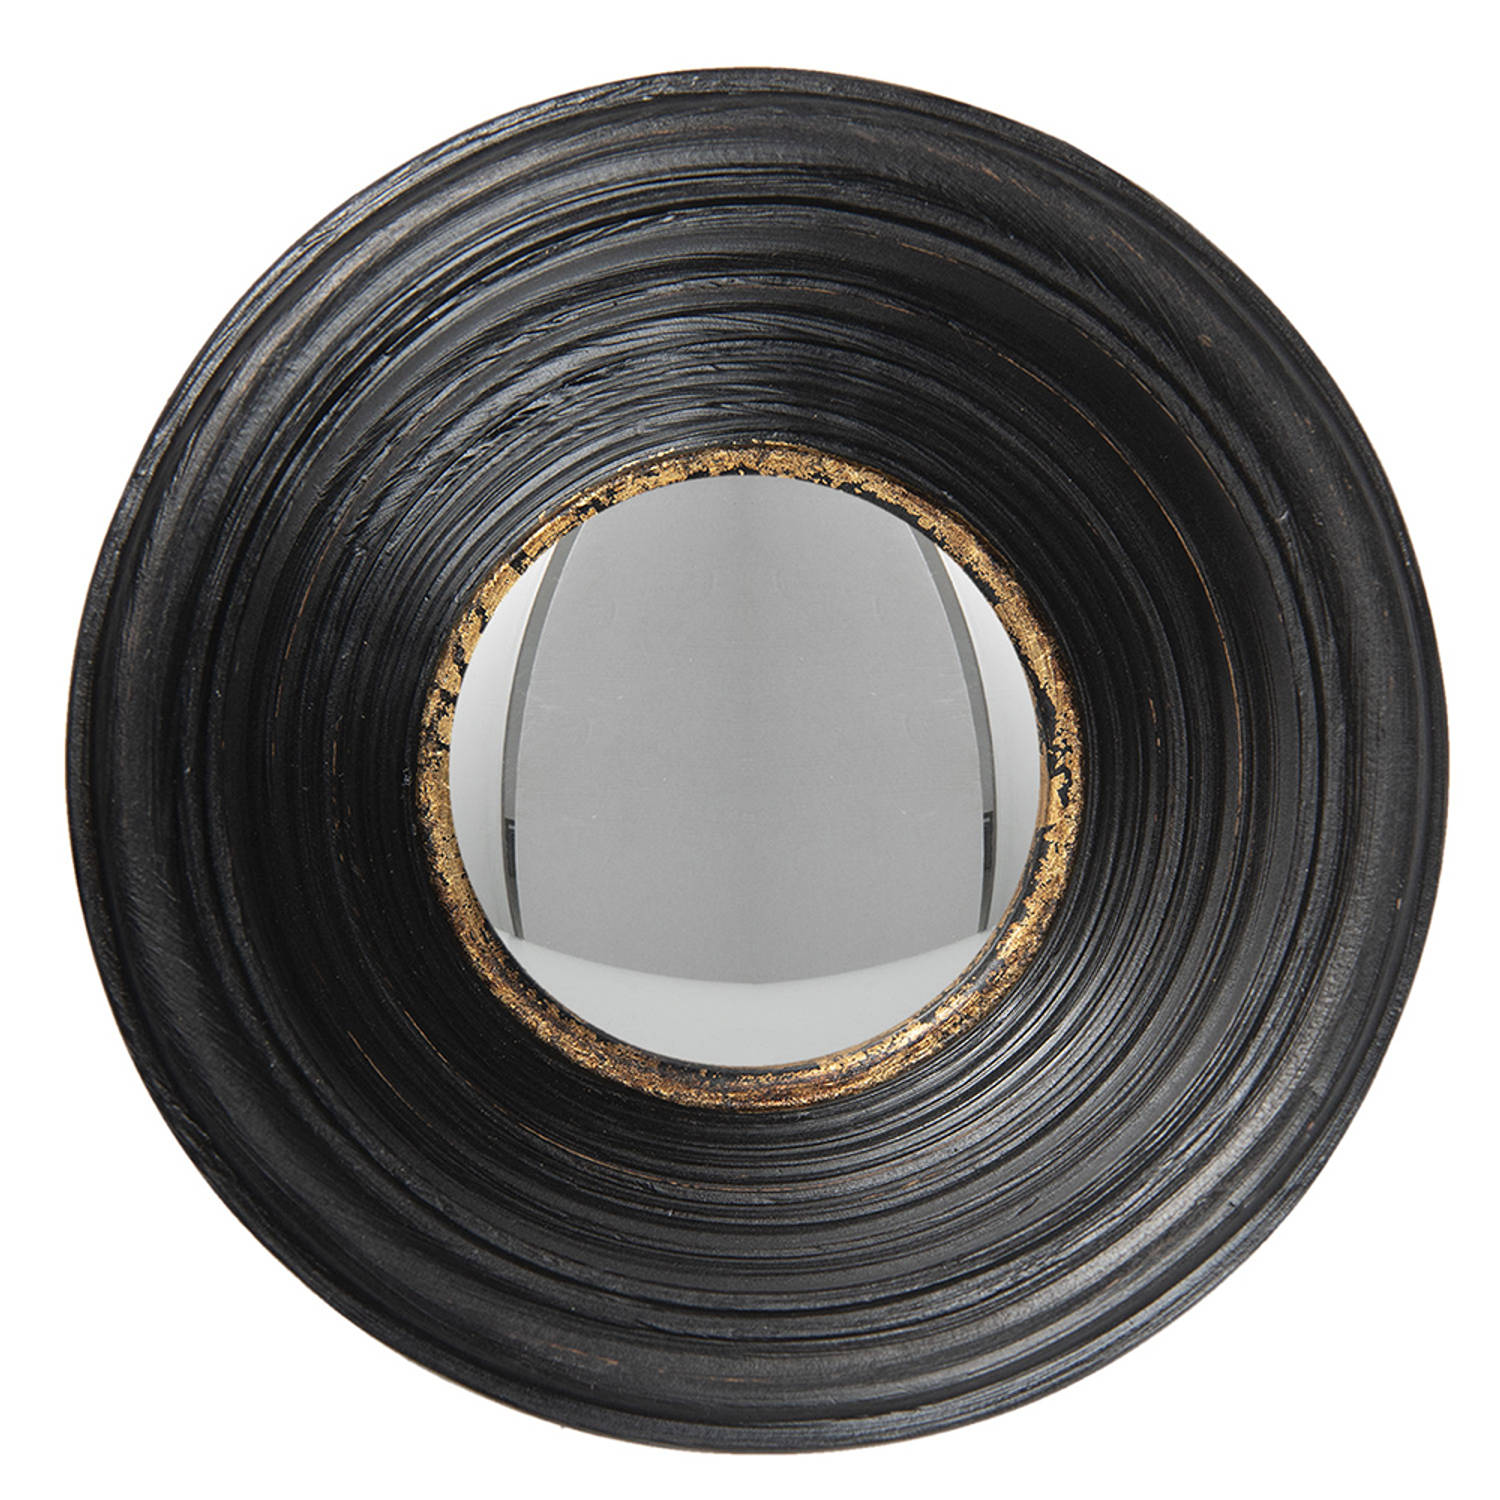 HAES DECO Bolle ronde Spiegel Zwart Ø 19x7 cm Polyurethaan ( PU) Wandspiegel, Spiegel rond, Convex G